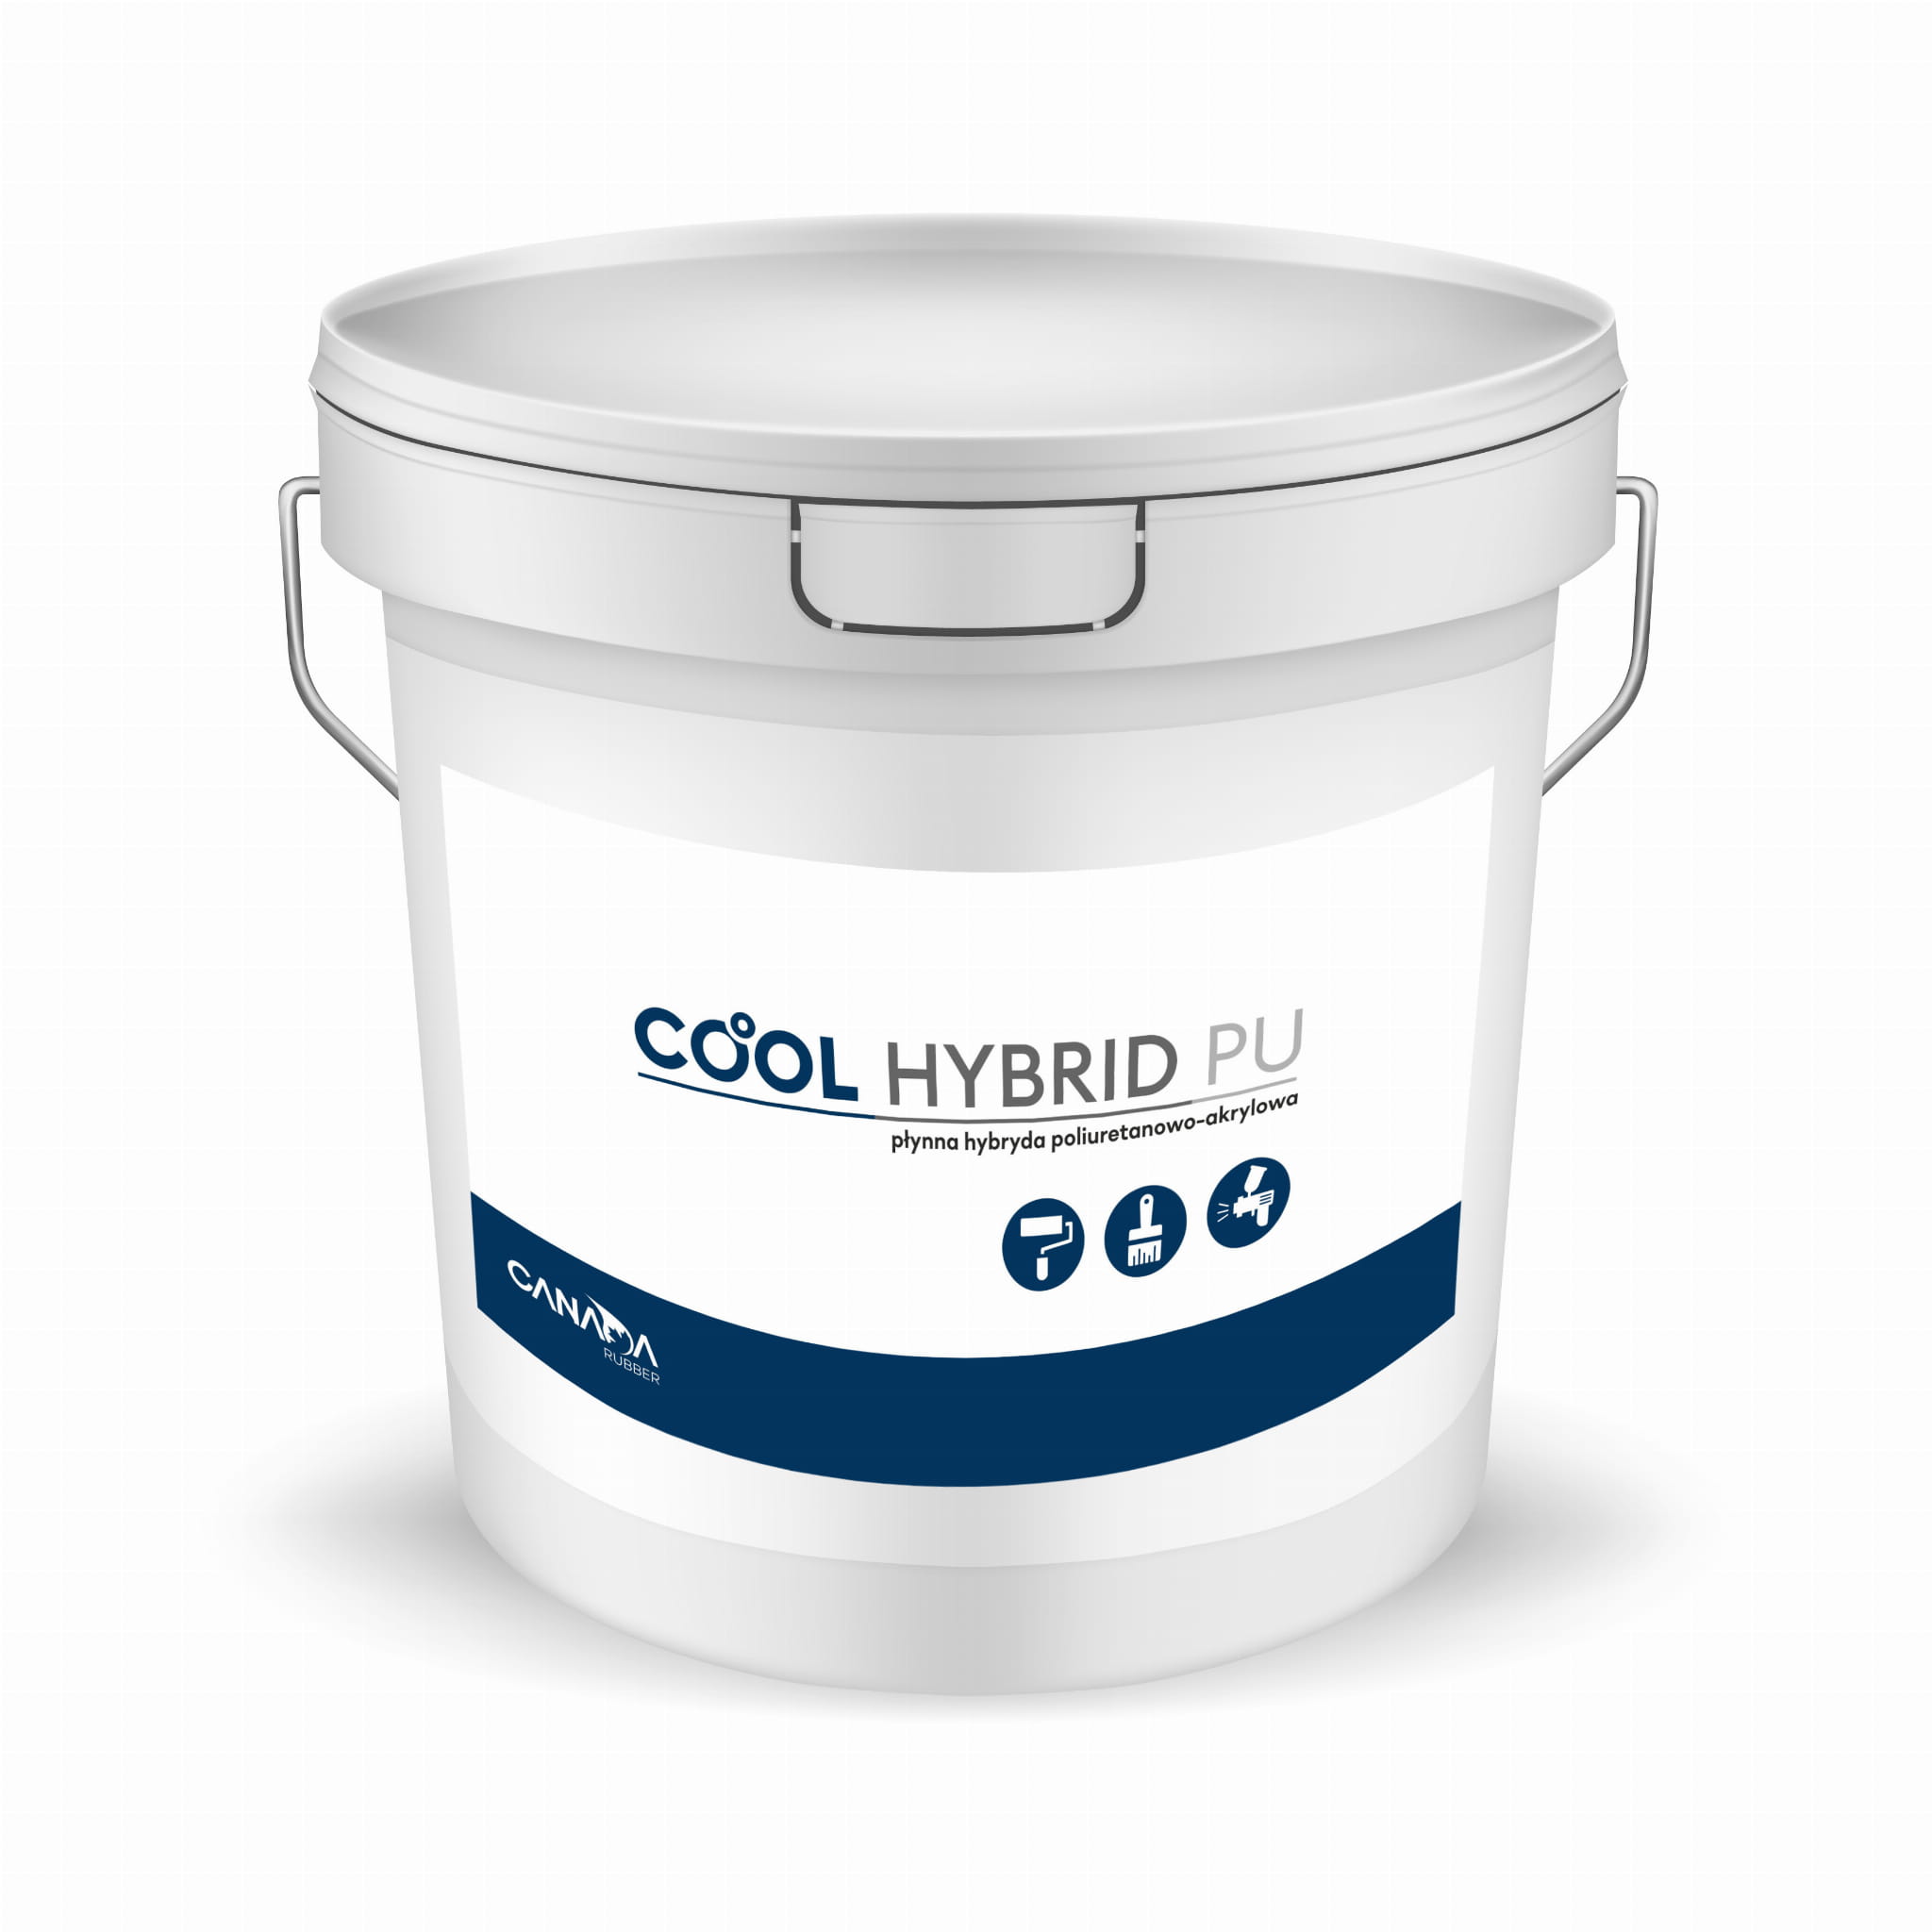 Jednoskładnikowa płynna elastyczna hybryda poliuretanowo-akrylowa Canada Rubber COOL HYBRID PU, biała 12 kg